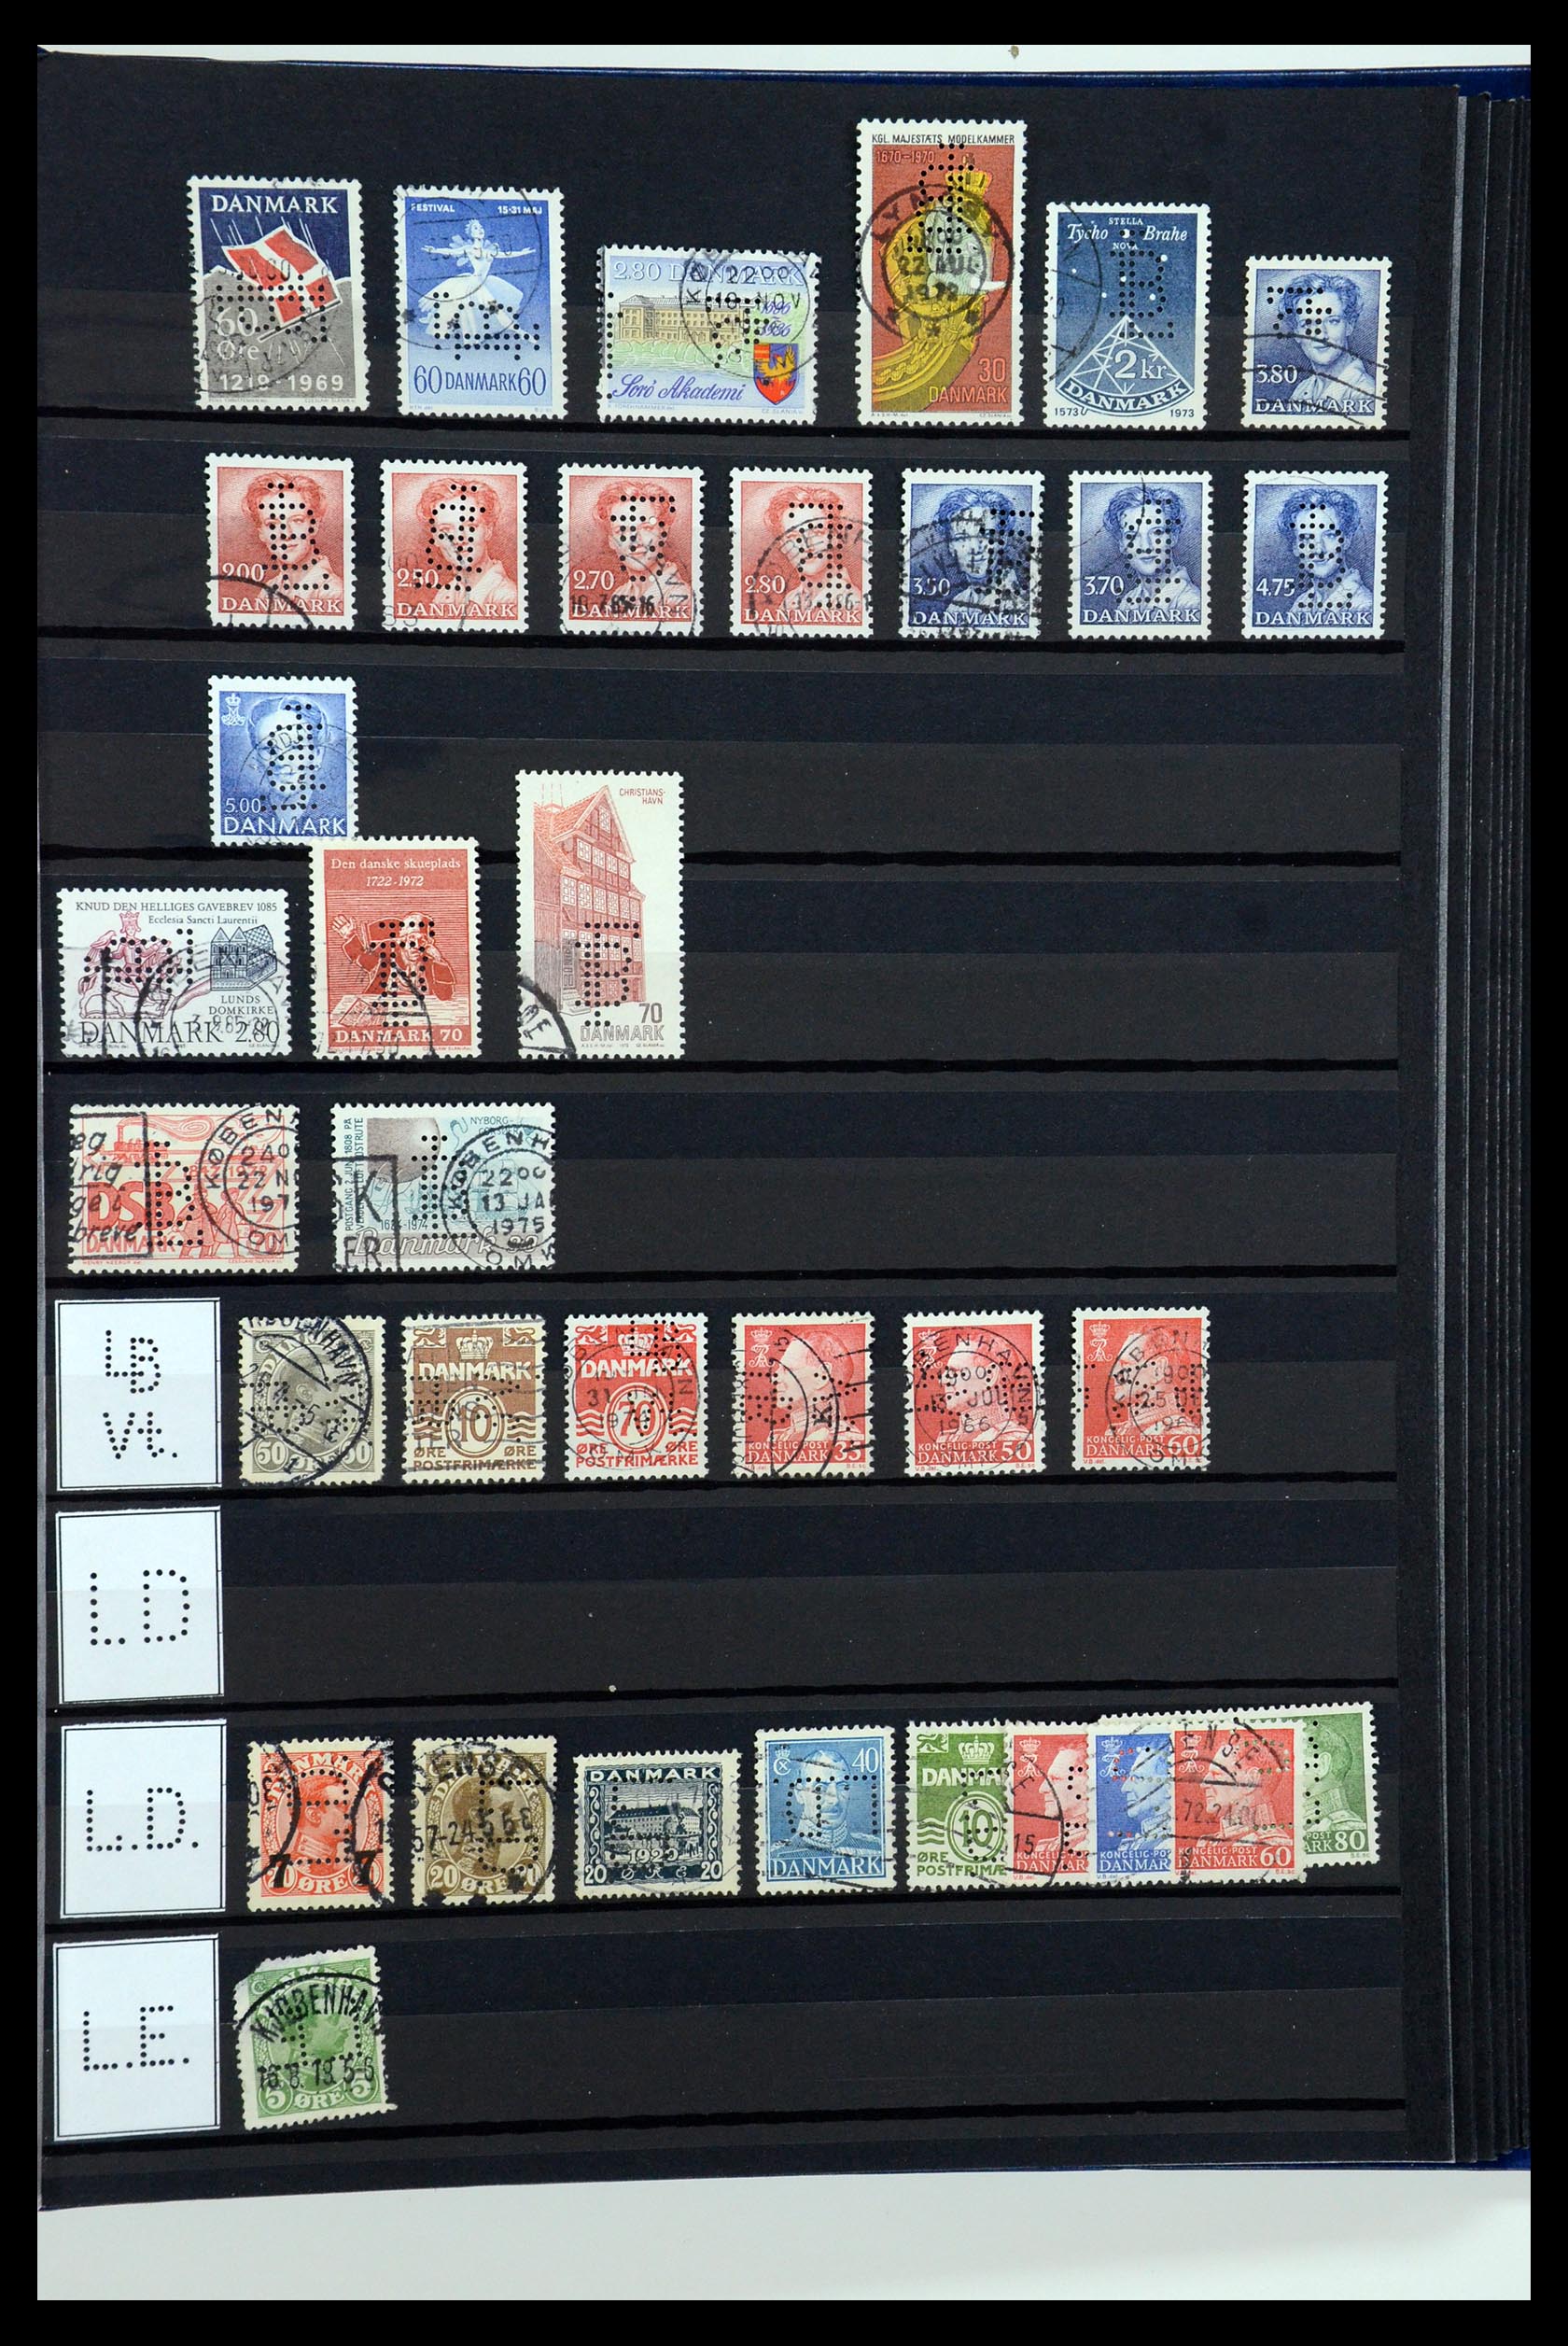 36396 163 - Postzegelverzameling 36396 Denemarken perfins.